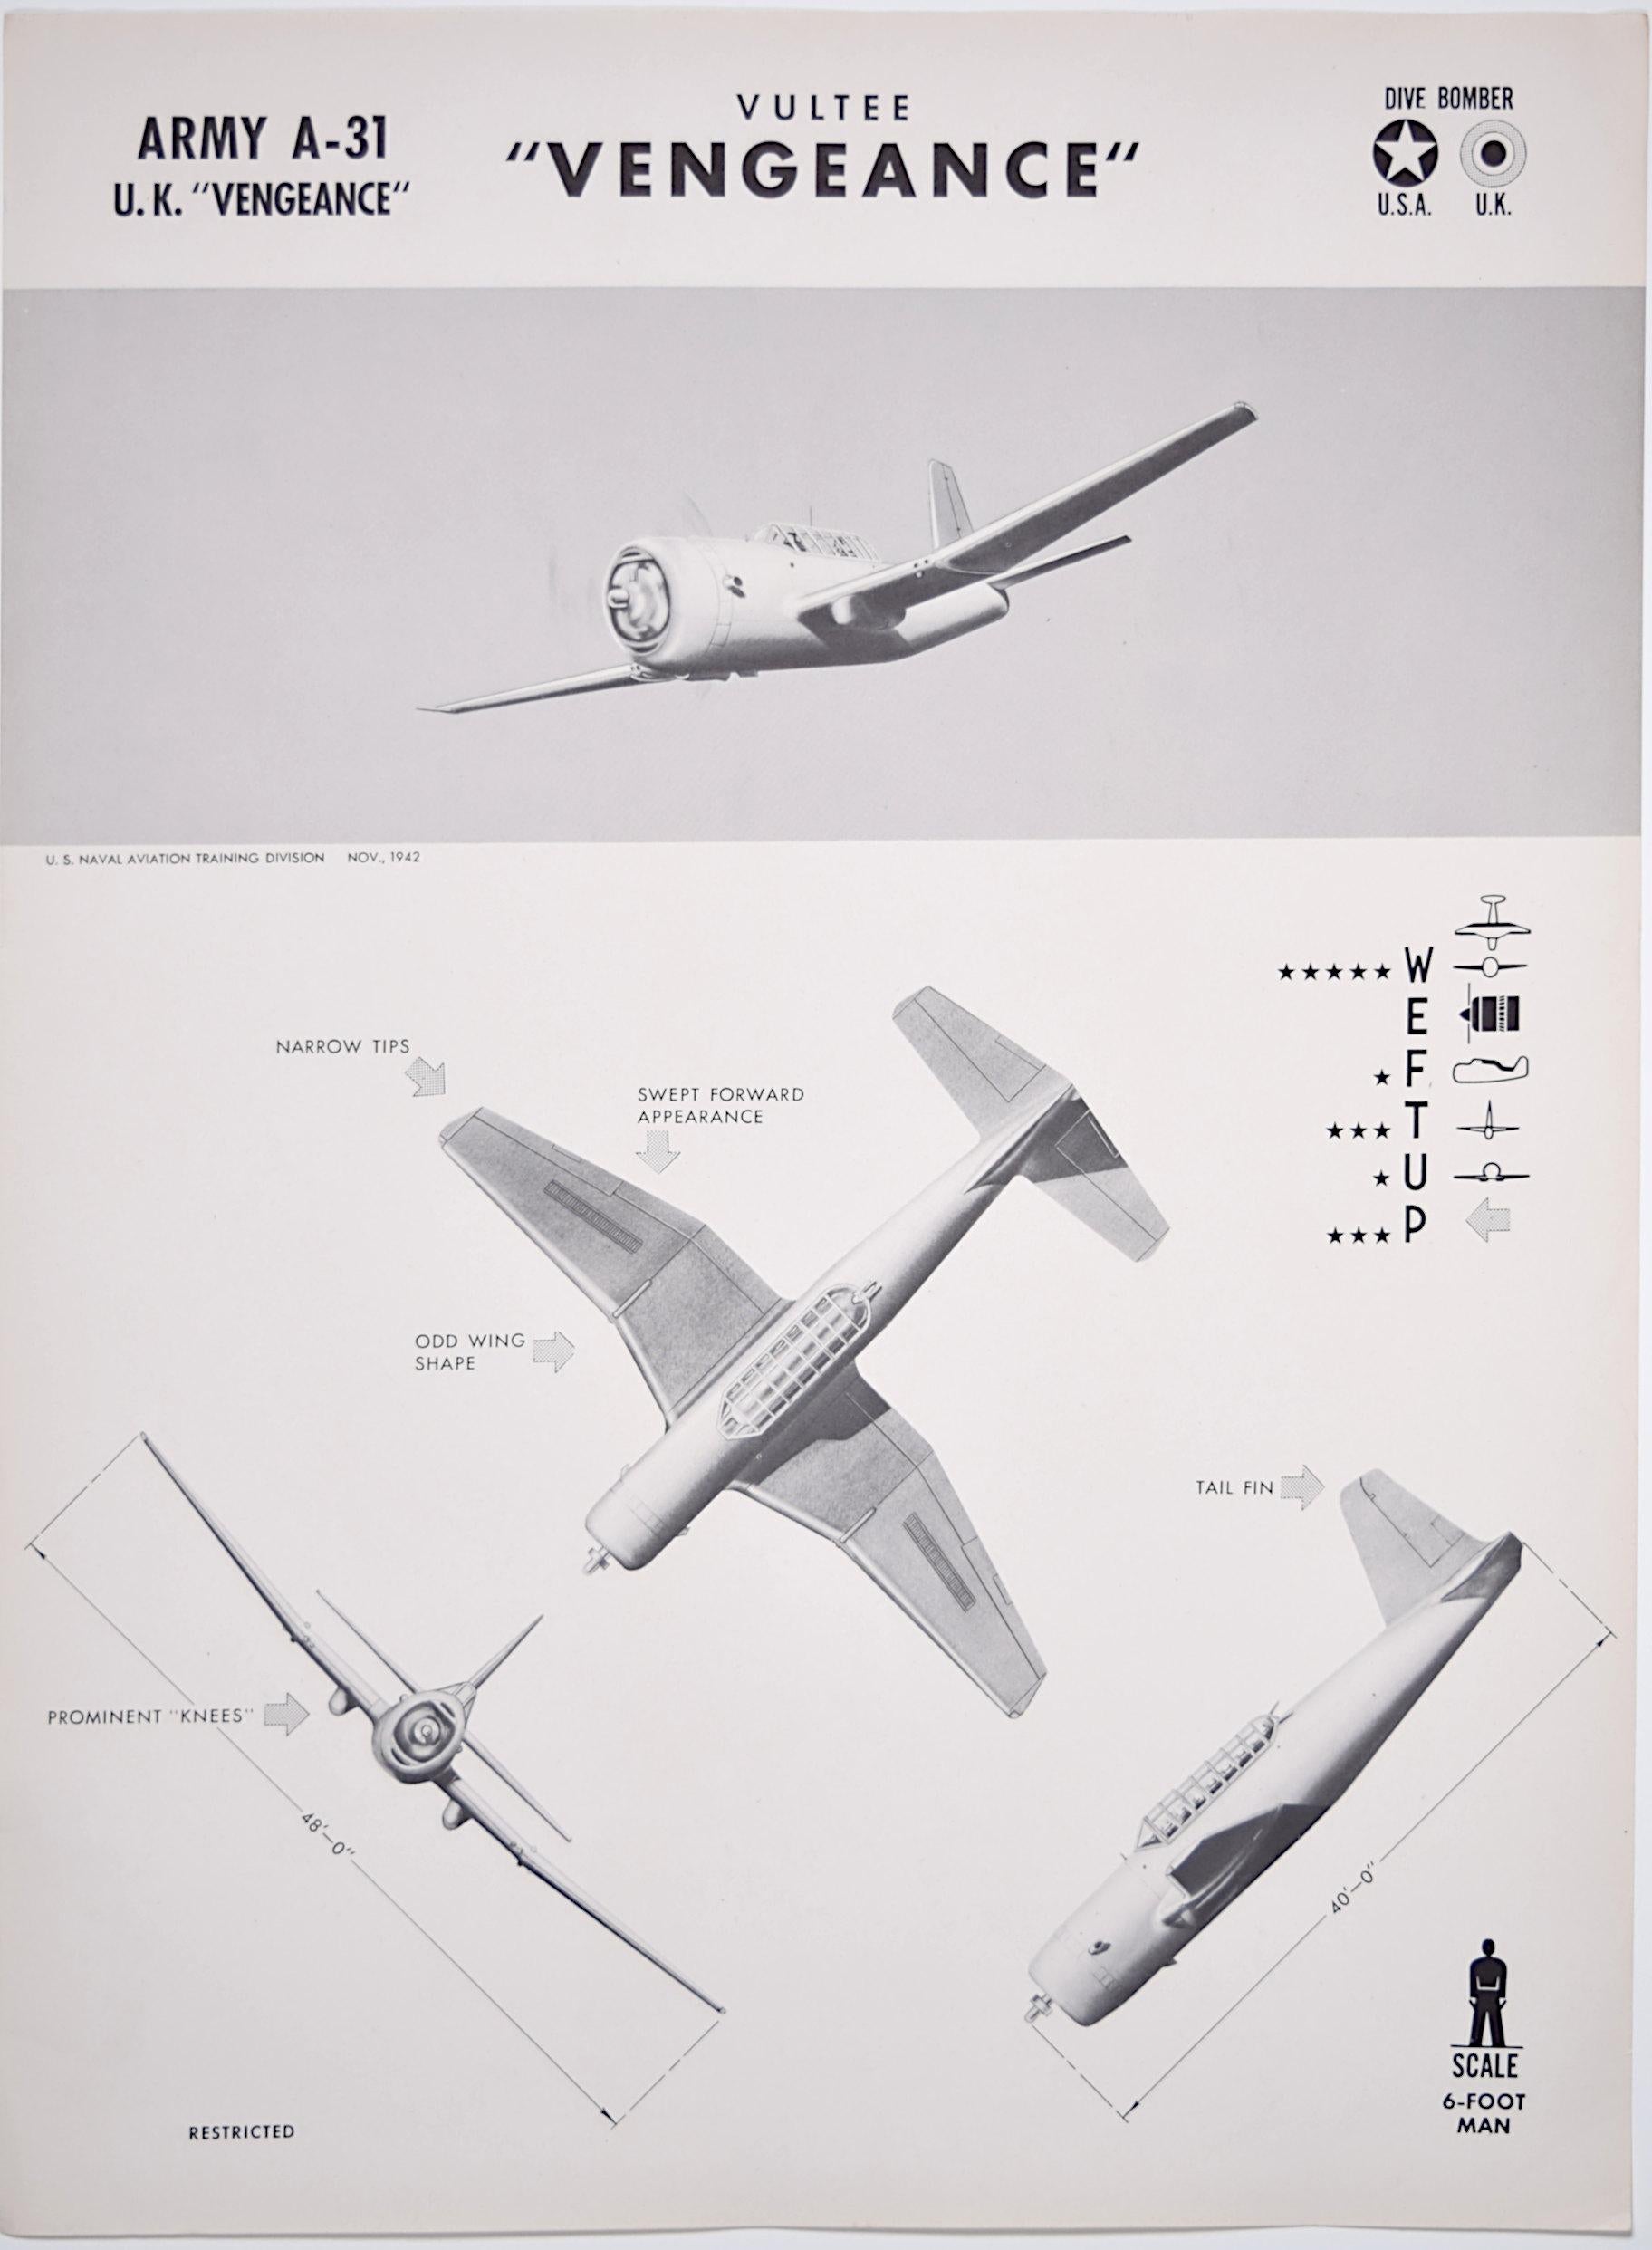 1943 Vultee Vengeance Affiche de reconnaissance de l'avion de la Seconde Guerre mondiale pub. Marine américaine RAF